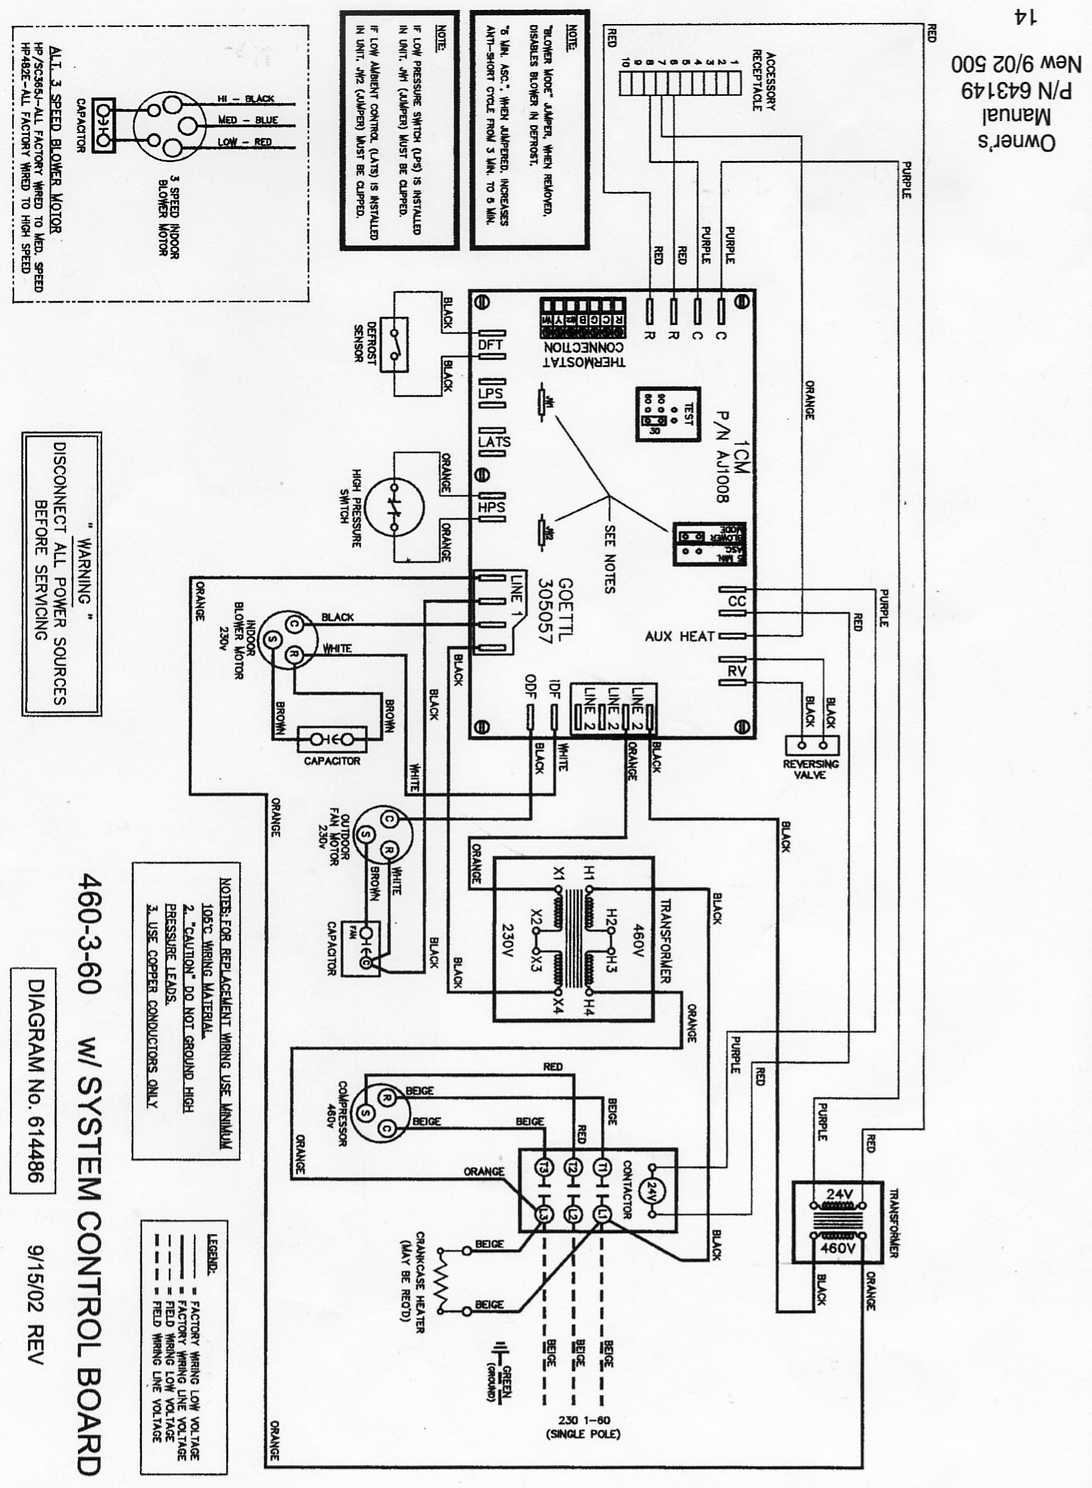 Trane 4ttb3024g1000aa Low Voltage Wiring Diagram